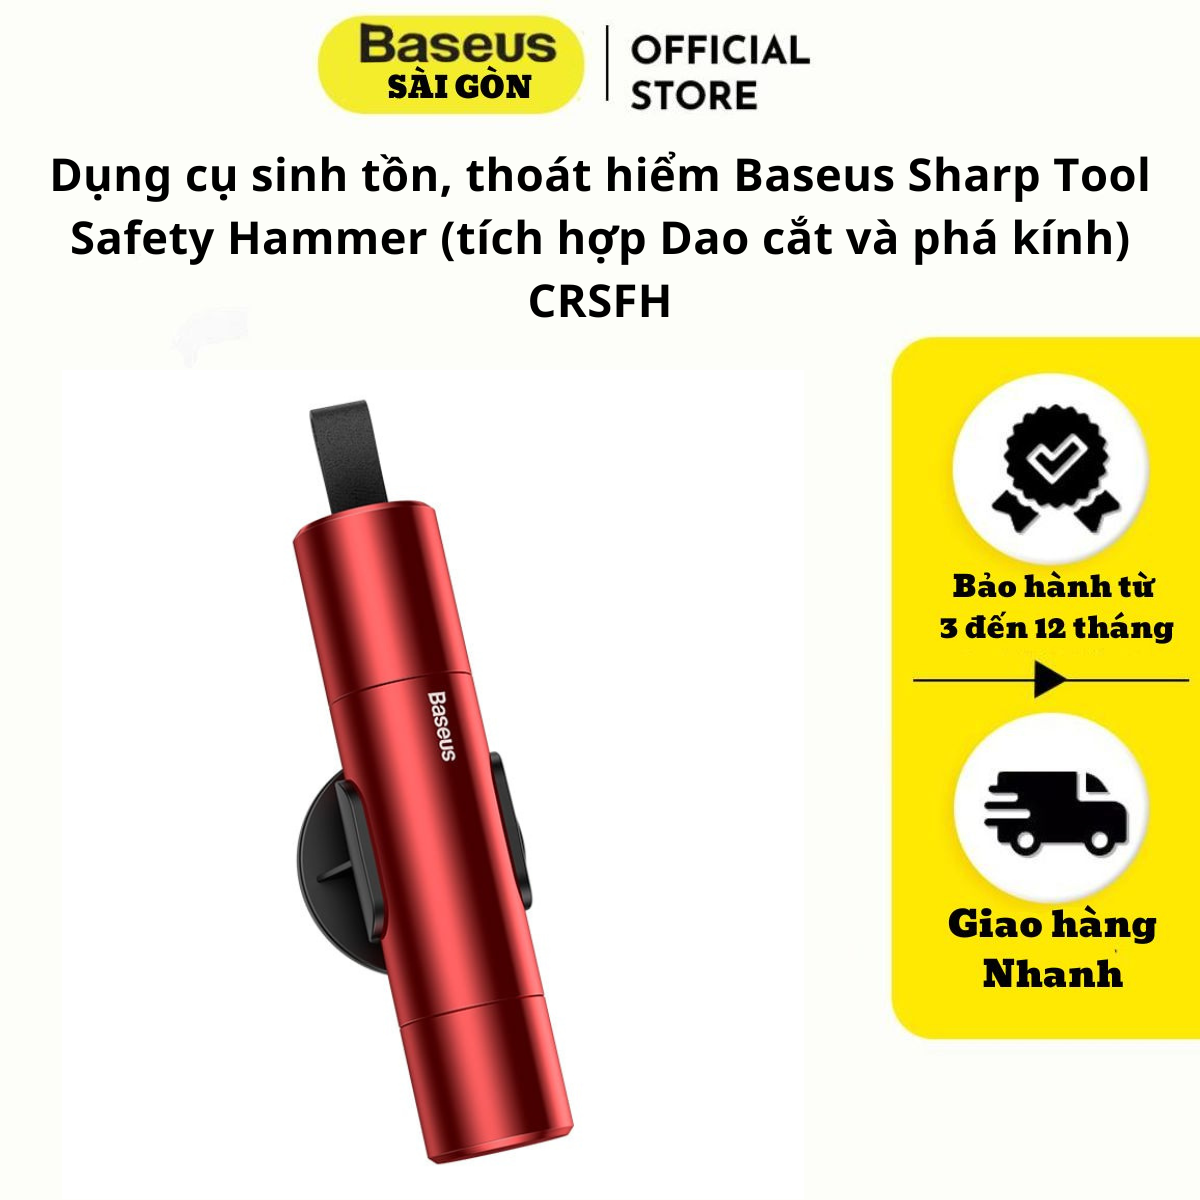 Dụng cụ sinh tồn, thoát hiểm Baseus Sharp Tool Safety Ham-mer (tích hợp Dao cắt và phá kính) CRSFH- Hàng chính hãng